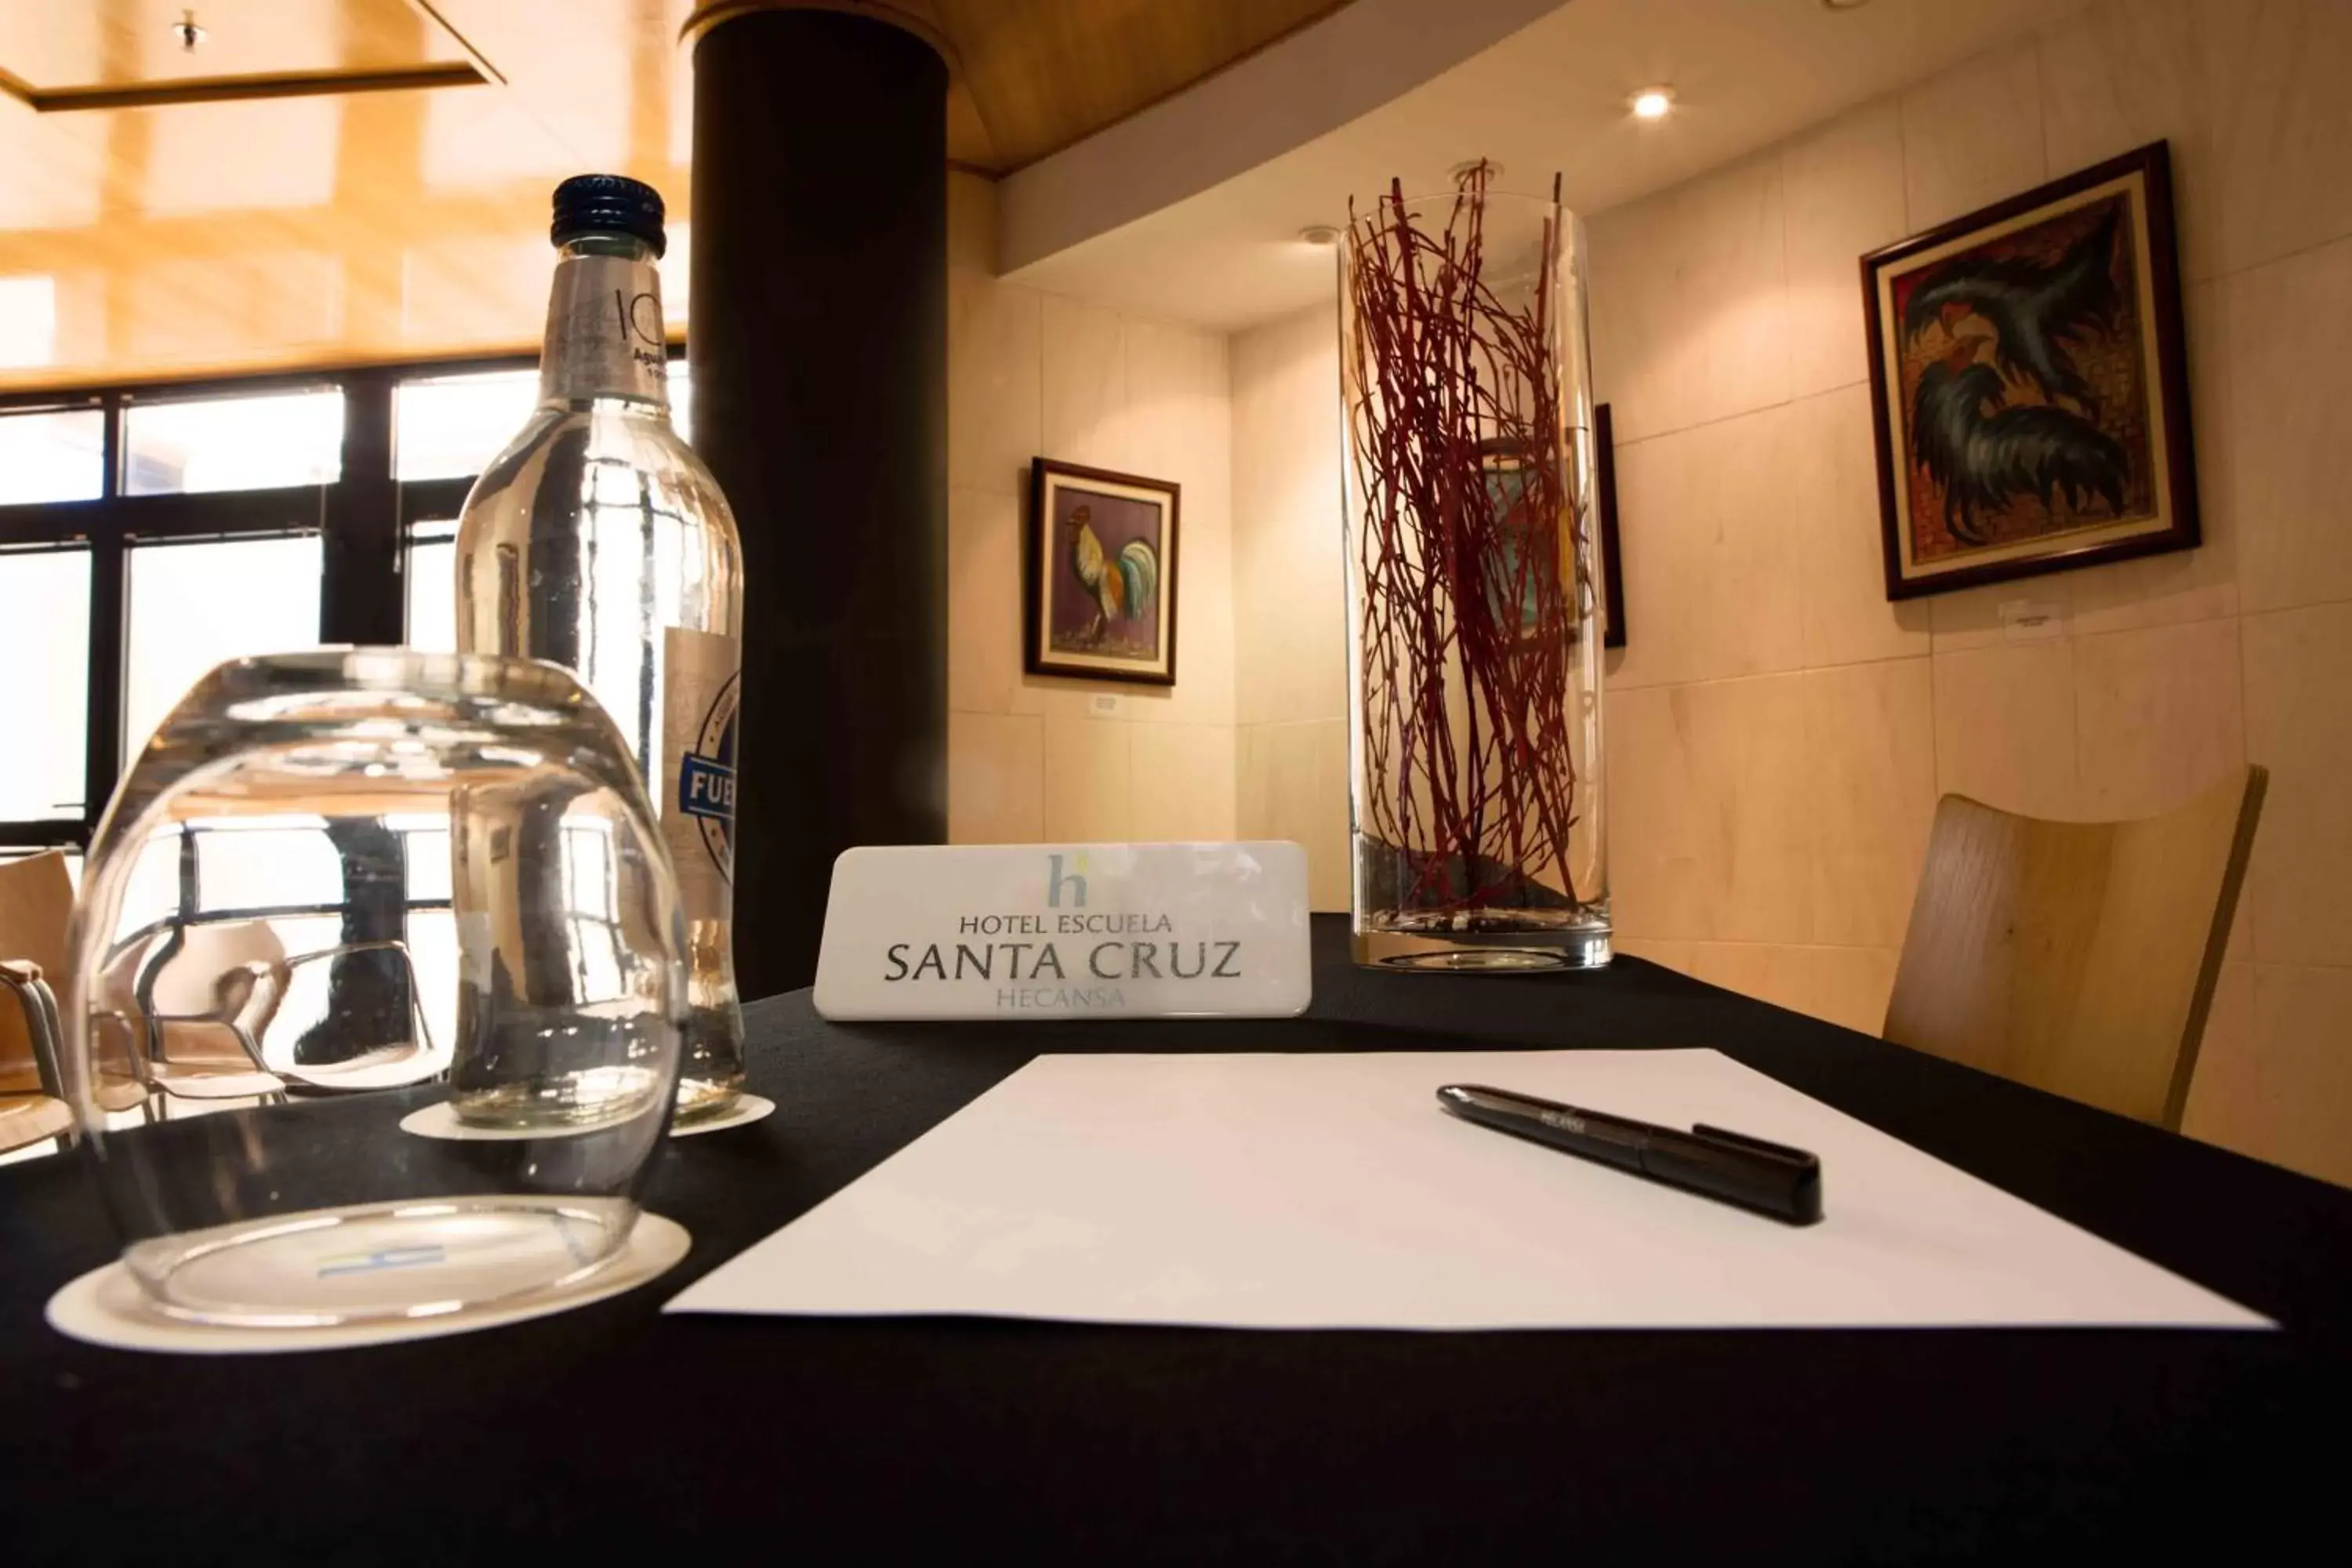 Banquet/Function facilities in Hotel Escuela Santa Cruz